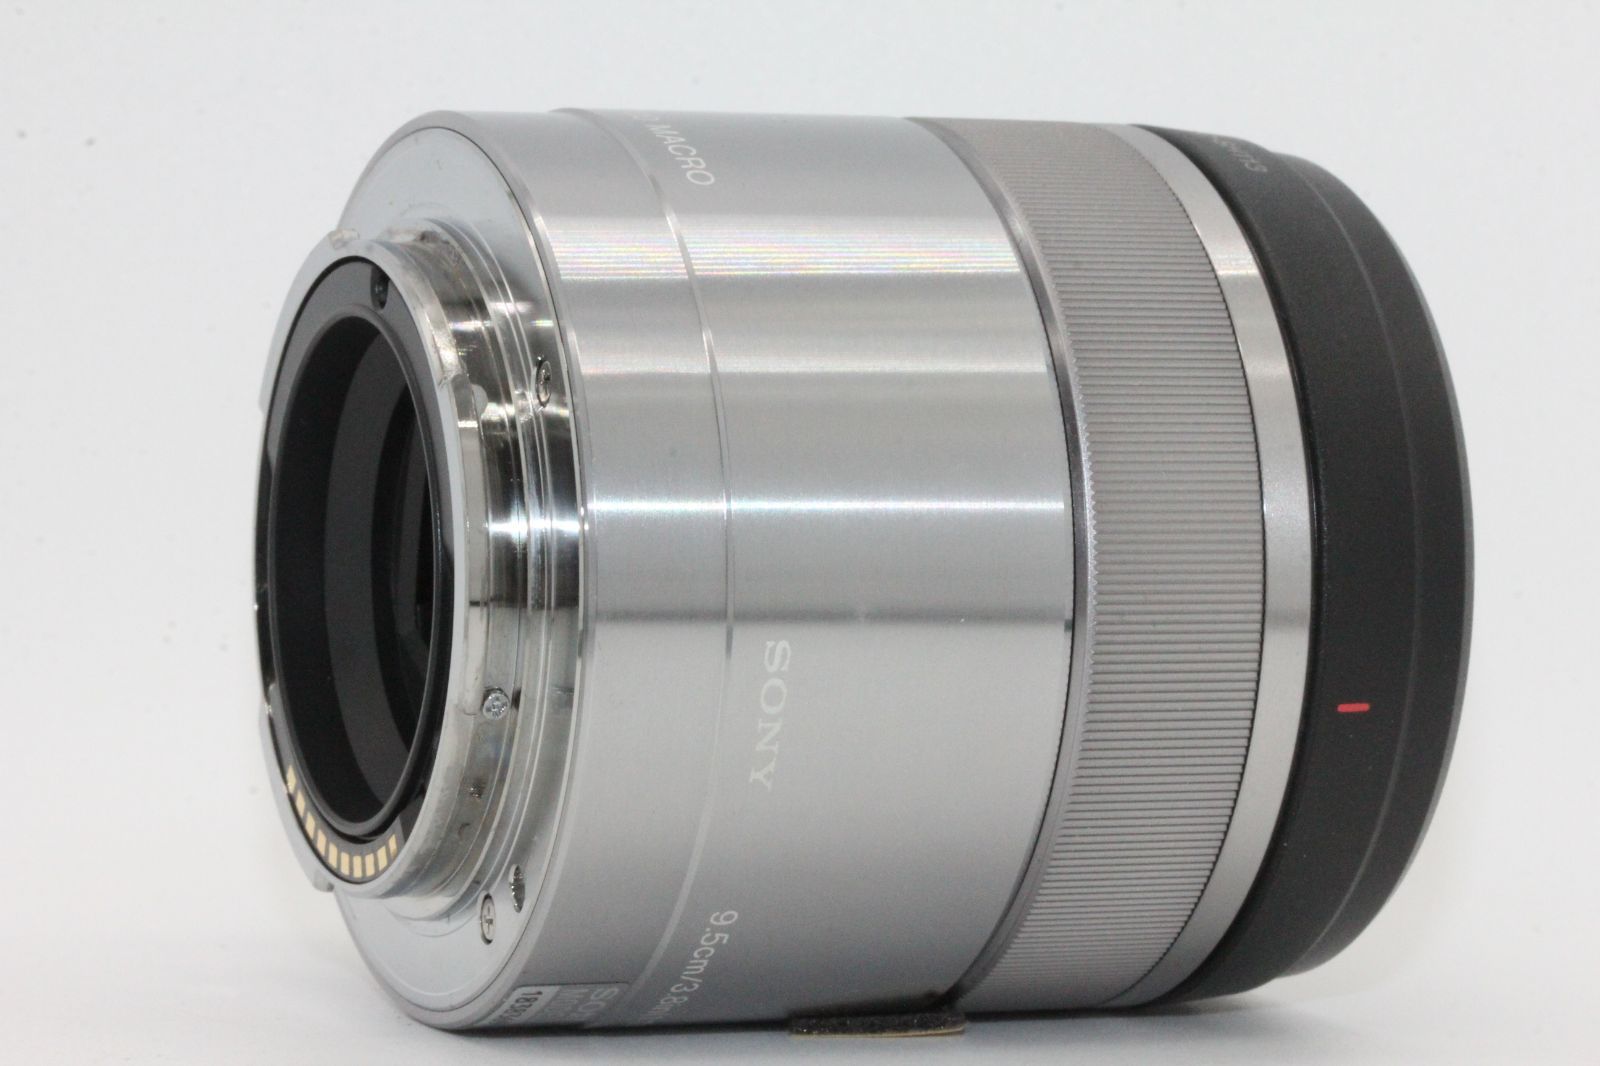 ソニー   マクロ   APS-C   E 30mm F3.5 Macro   デジタル一眼カメラα[Eマウント]用 純正レンズ   SEL30M35 - 3